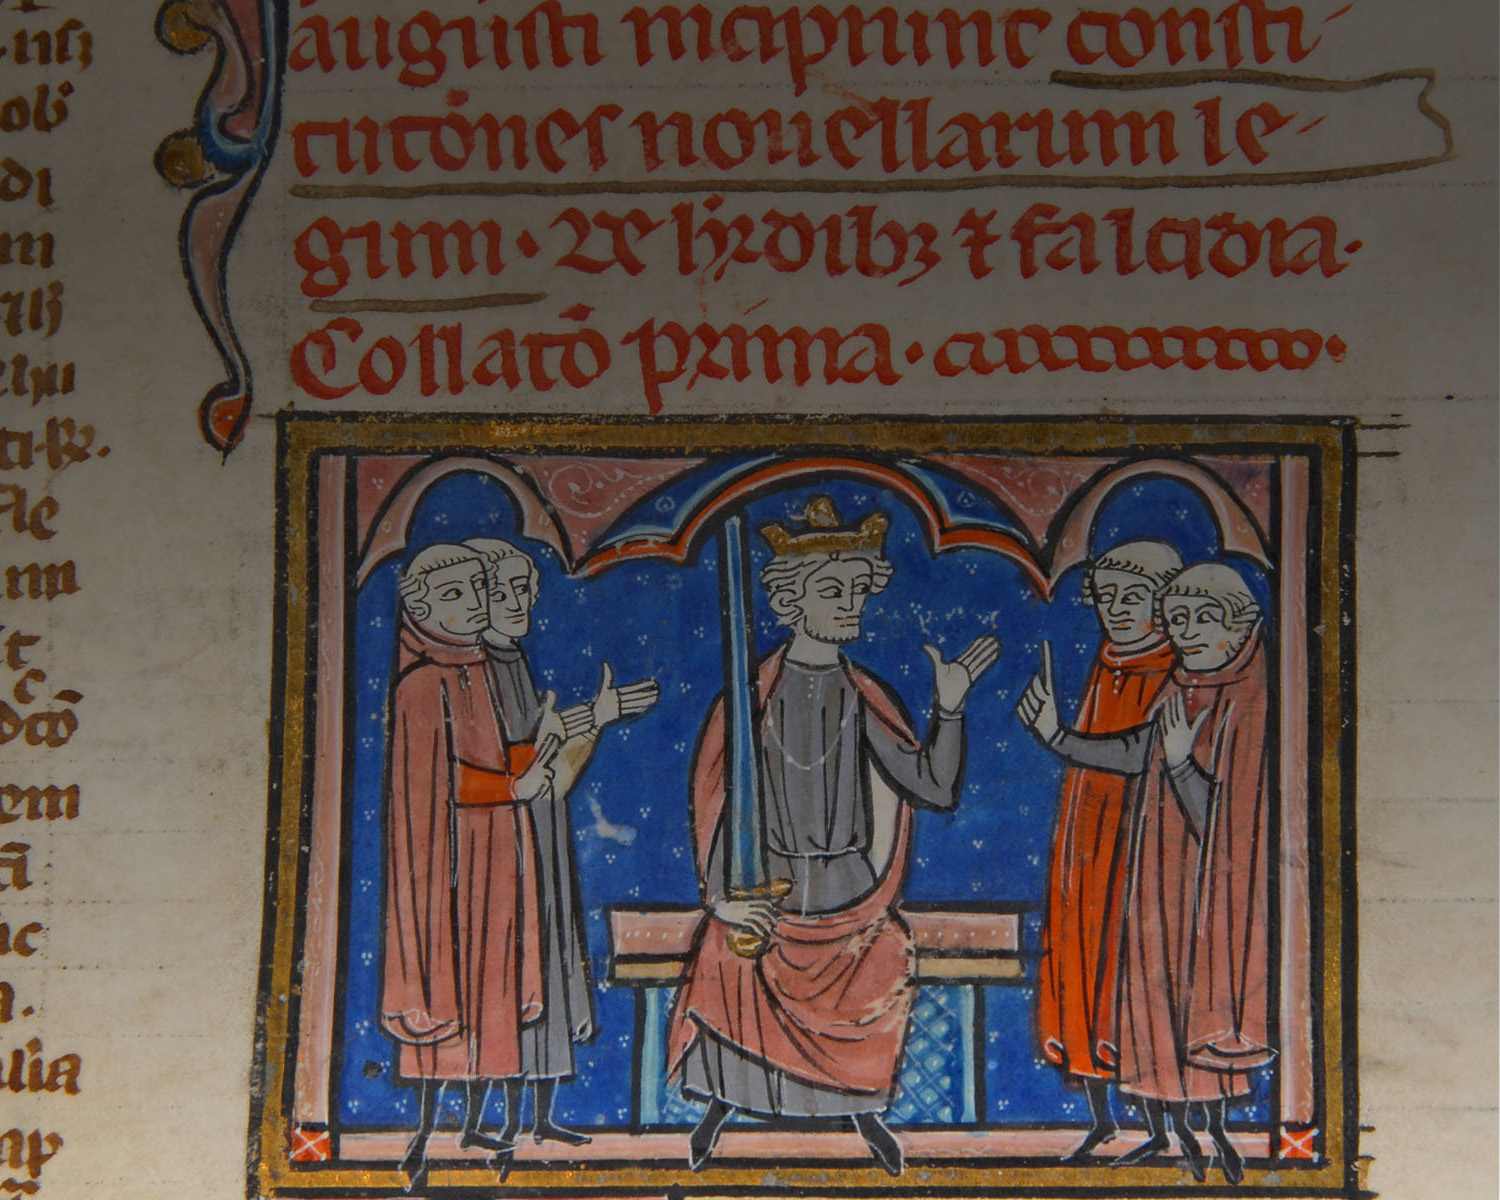 Magna Carta 1217